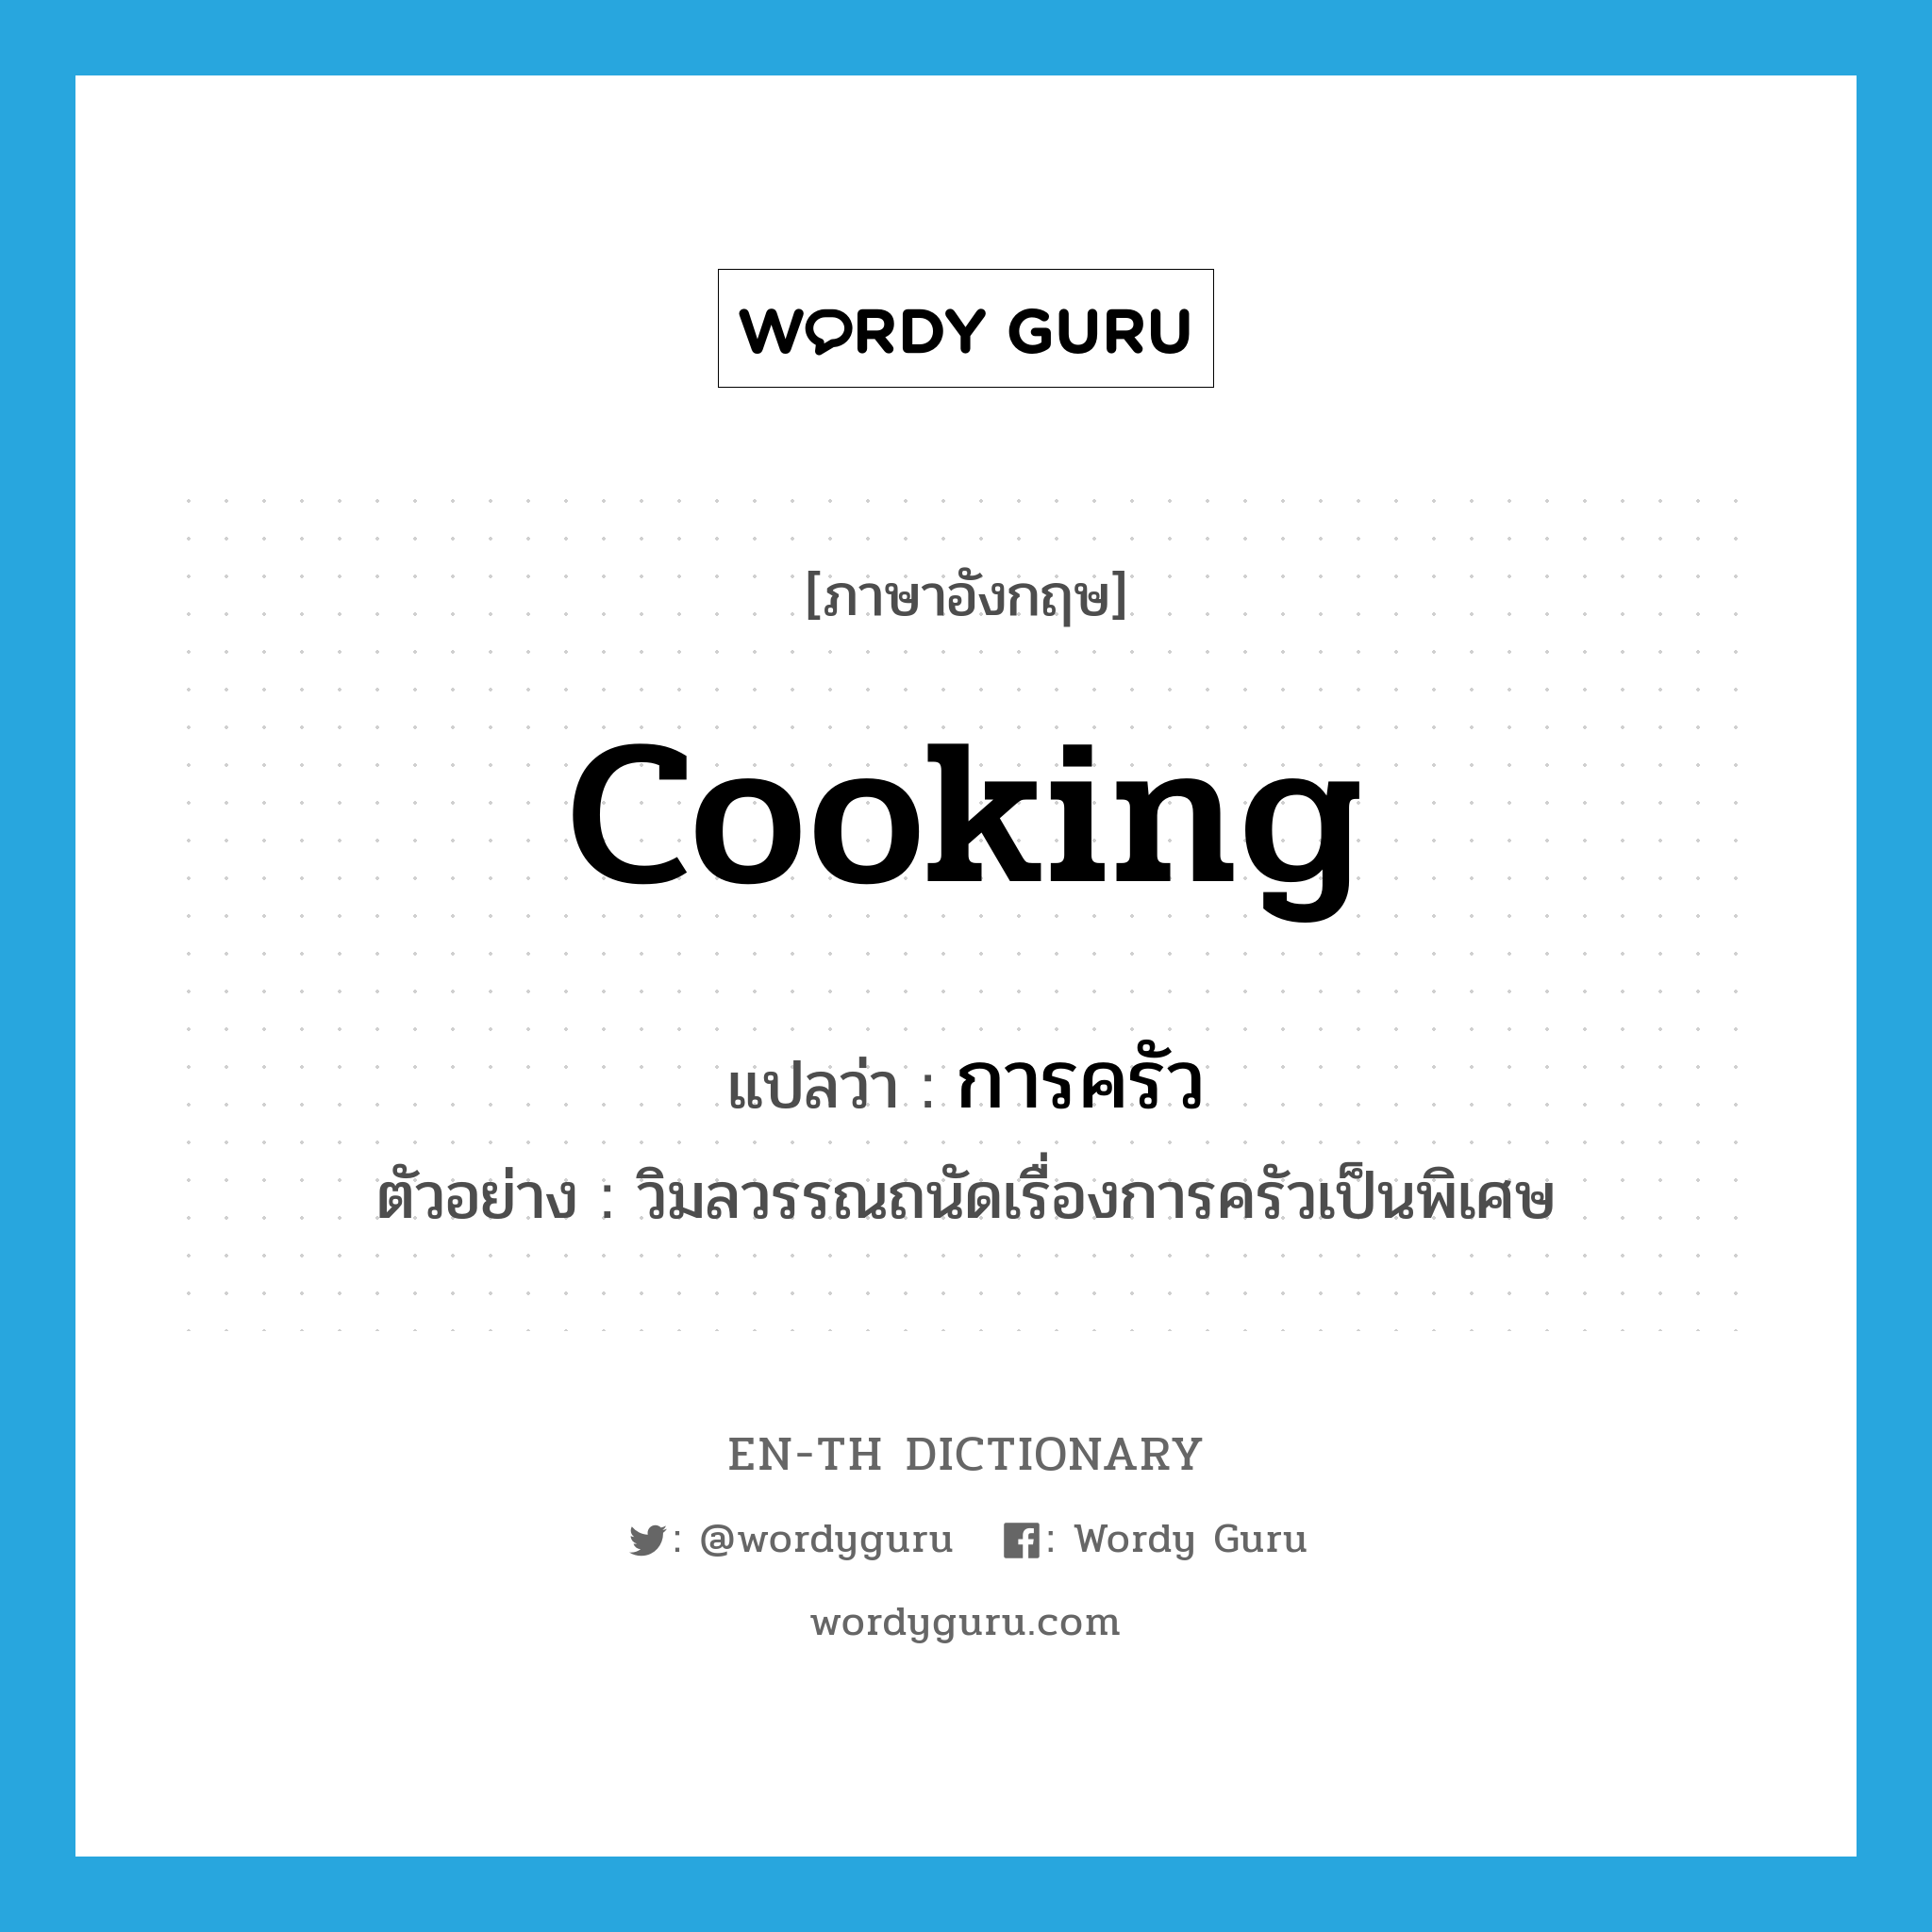 การครัว ภาษาอังกฤษ?, คำศัพท์ภาษาอังกฤษ การครัว แปลว่า cooking ประเภท N ตัวอย่าง วิมลวรรณถนัดเรื่องการครัวเป็นพิเศษ หมวด N